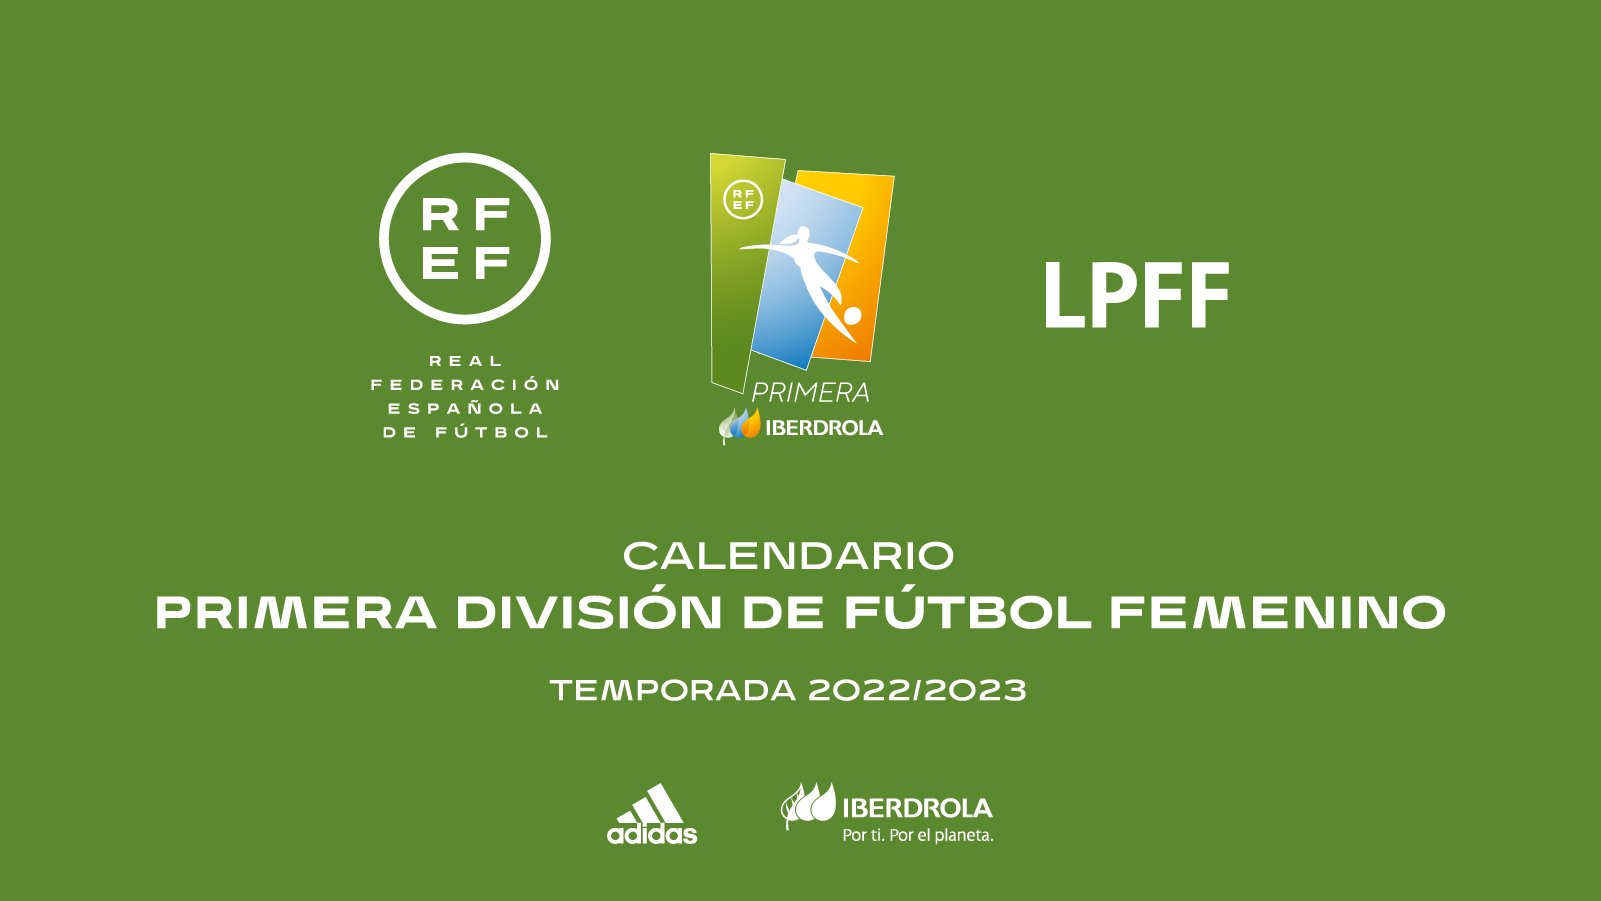 RFEF on Twitter: "🟢 Calendario de la Primera de Fútbol Femenino (@FutFemRFEF) 2022-2023. 👀 Advertido que los dígitos durante el sorteo no se habían leído correctamente, se ha la